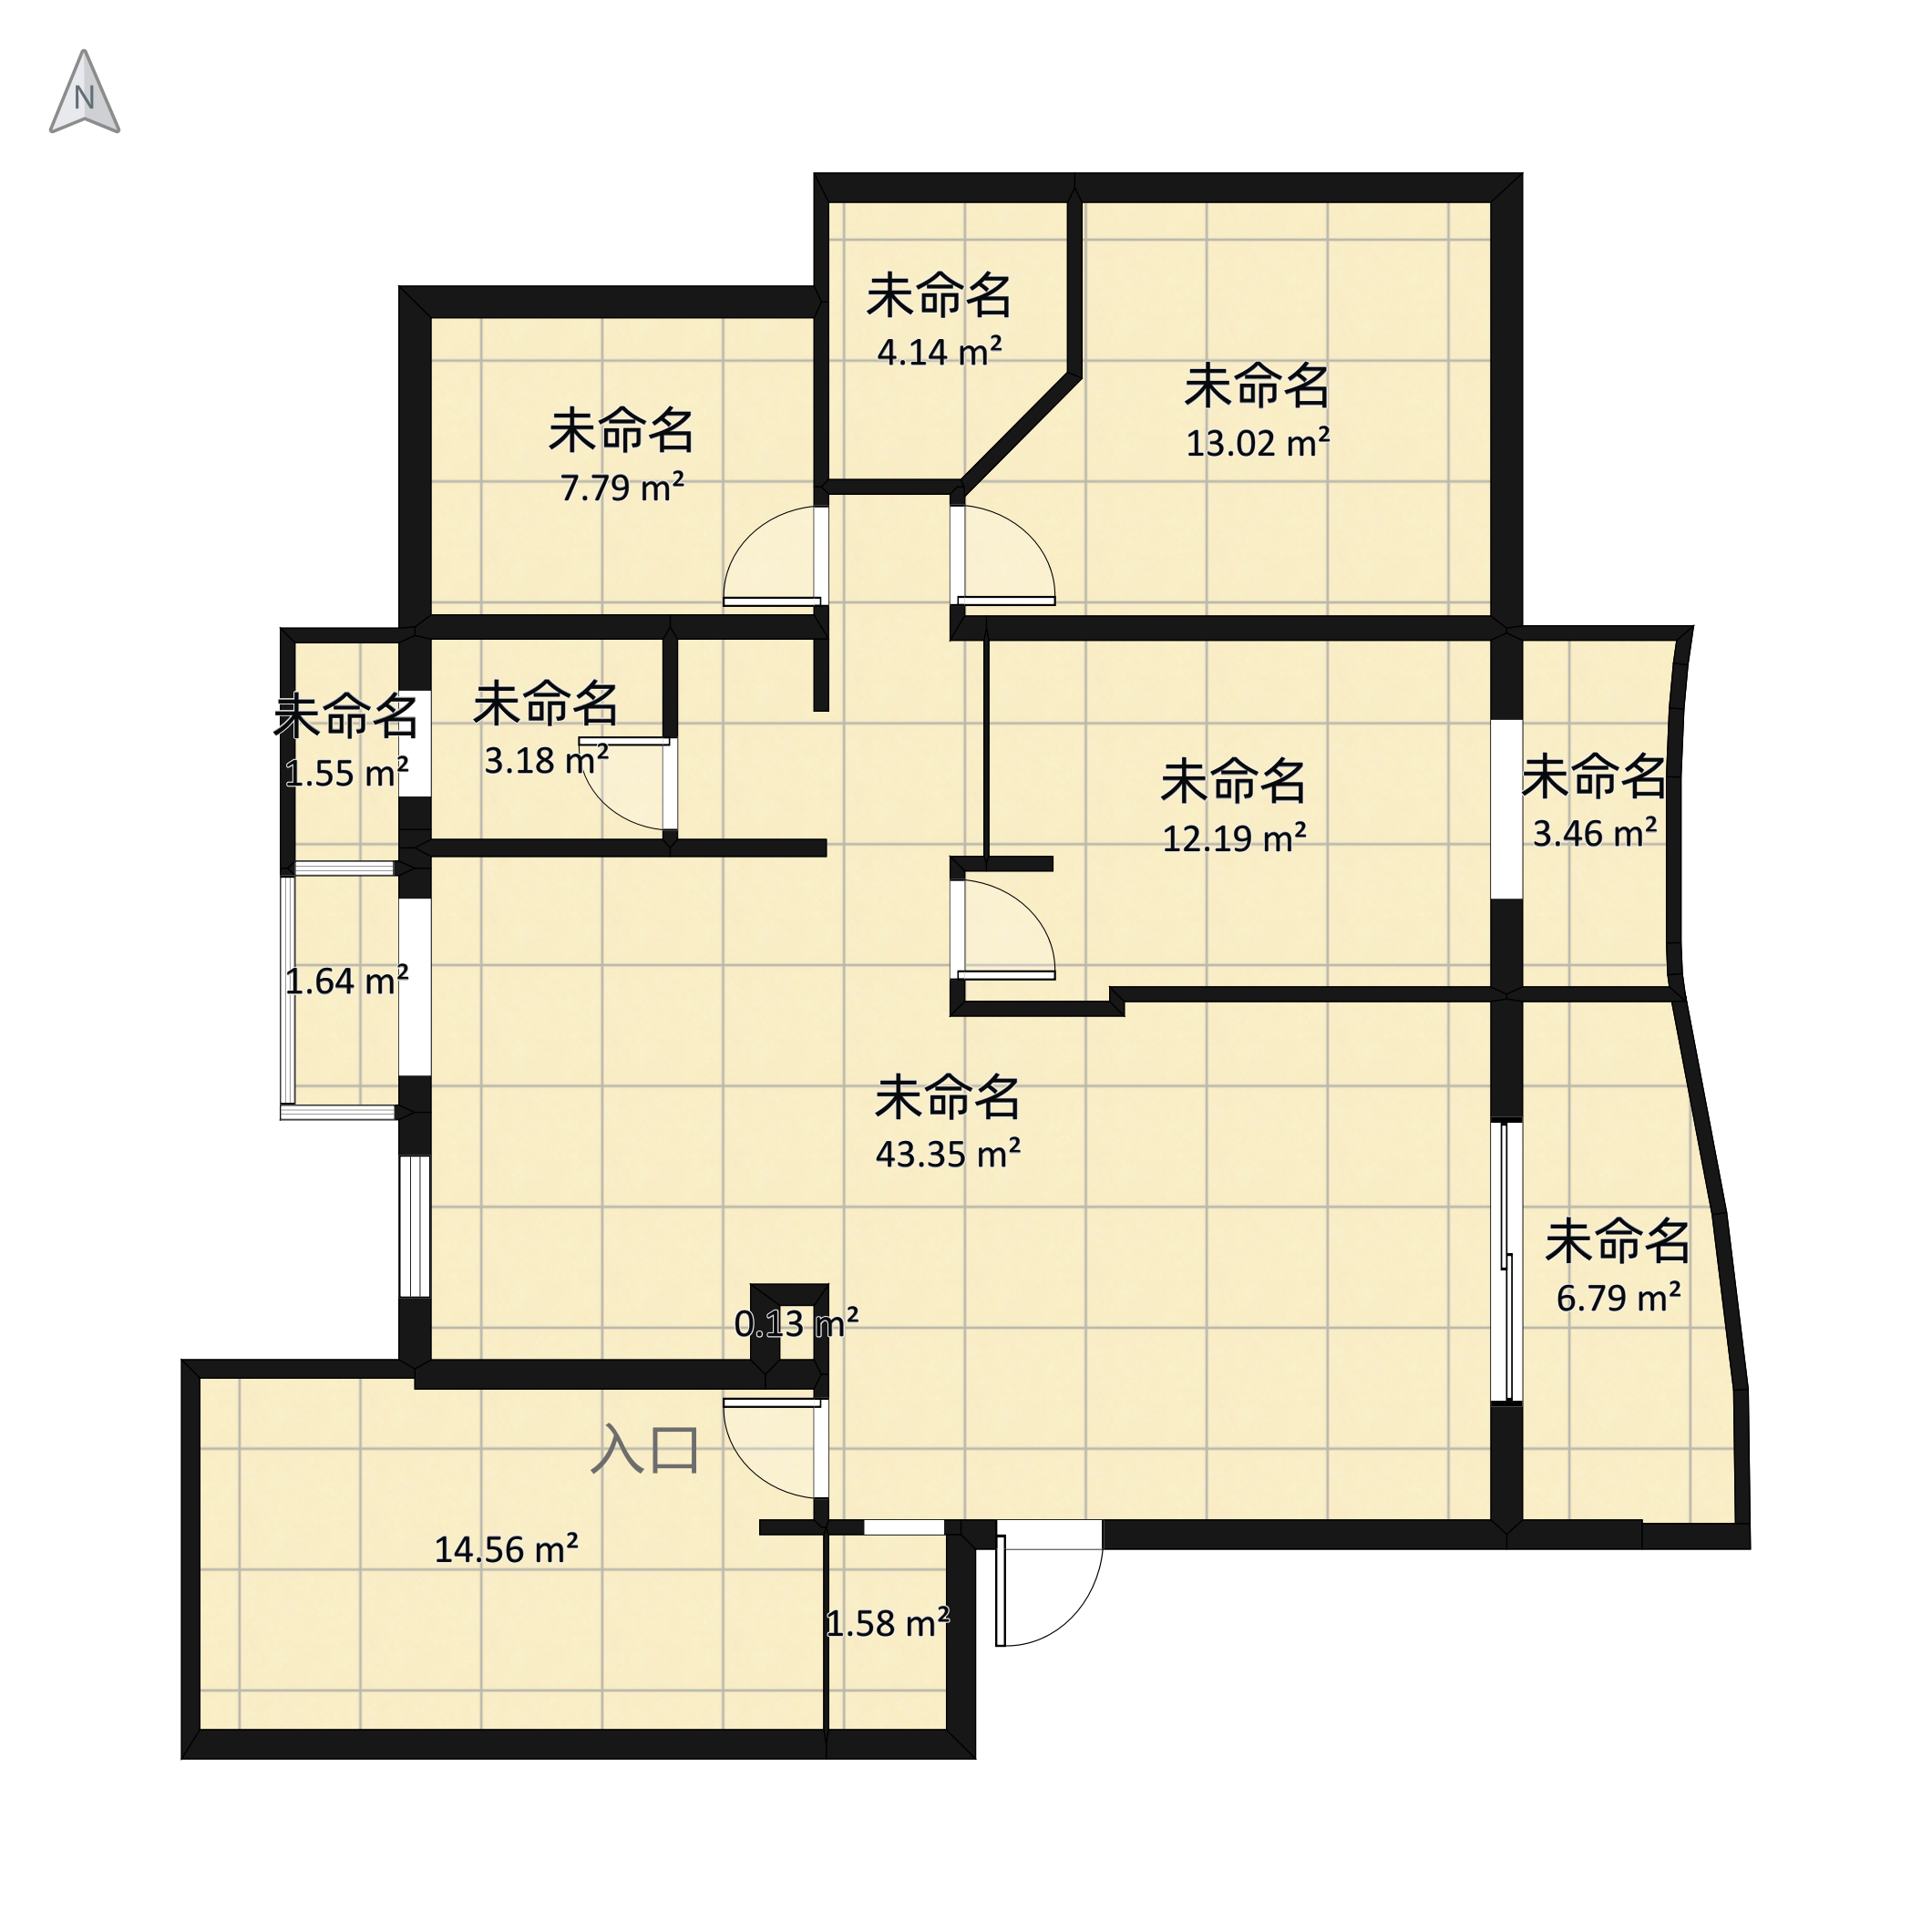 和家园雍园3号楼167方四房两厅两卫户型图_杭州和家园雍园_杭州365淘房